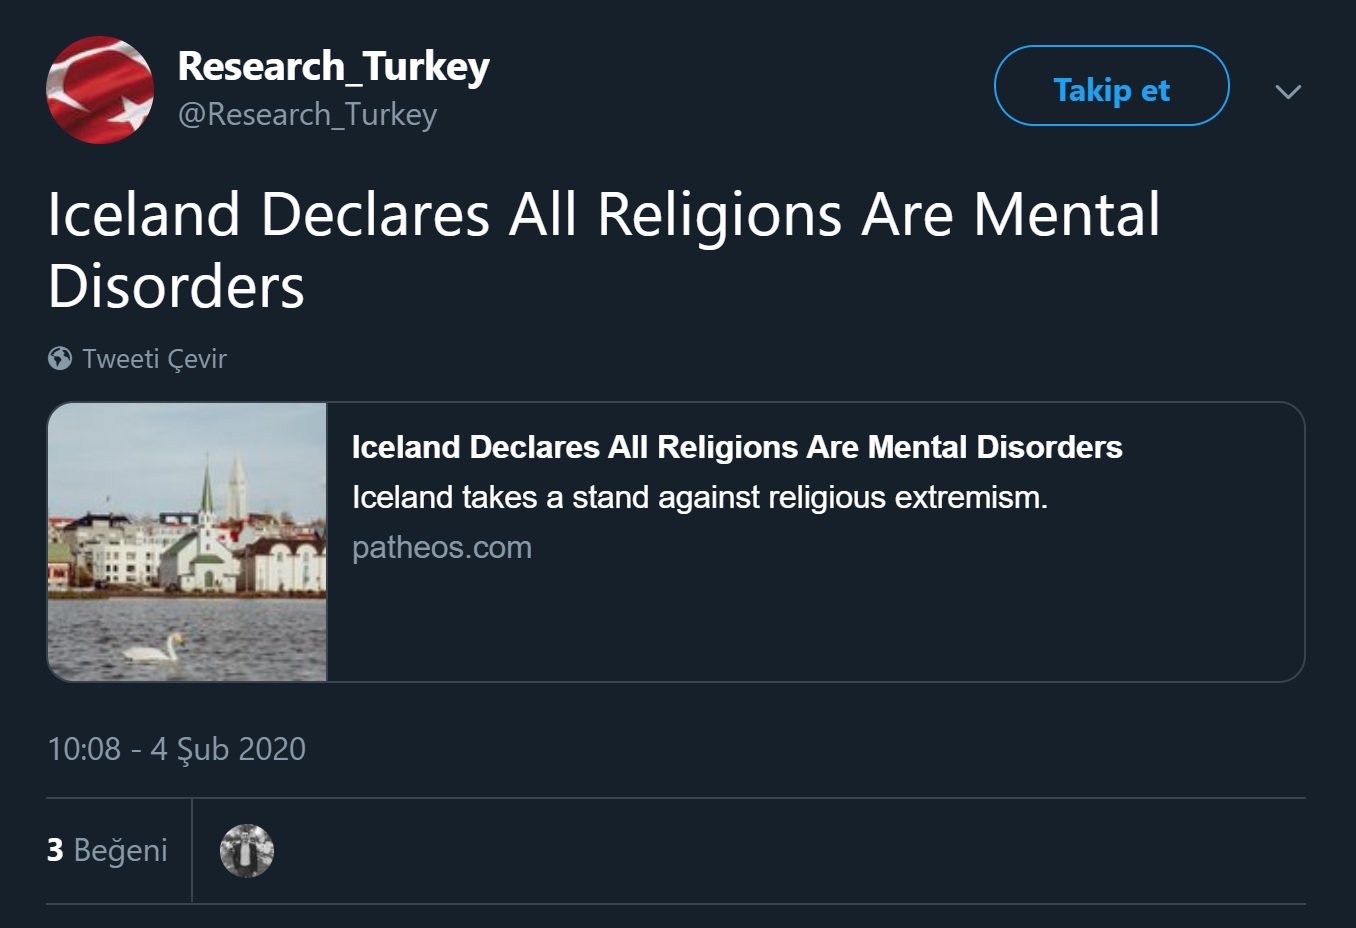 Research Turkey adlı ekonomi odaklı Twitter profilinin İzlanda'nın tüm dinleri akıl hastalığı ilân ettiği iddiasını içeren paylaşımı